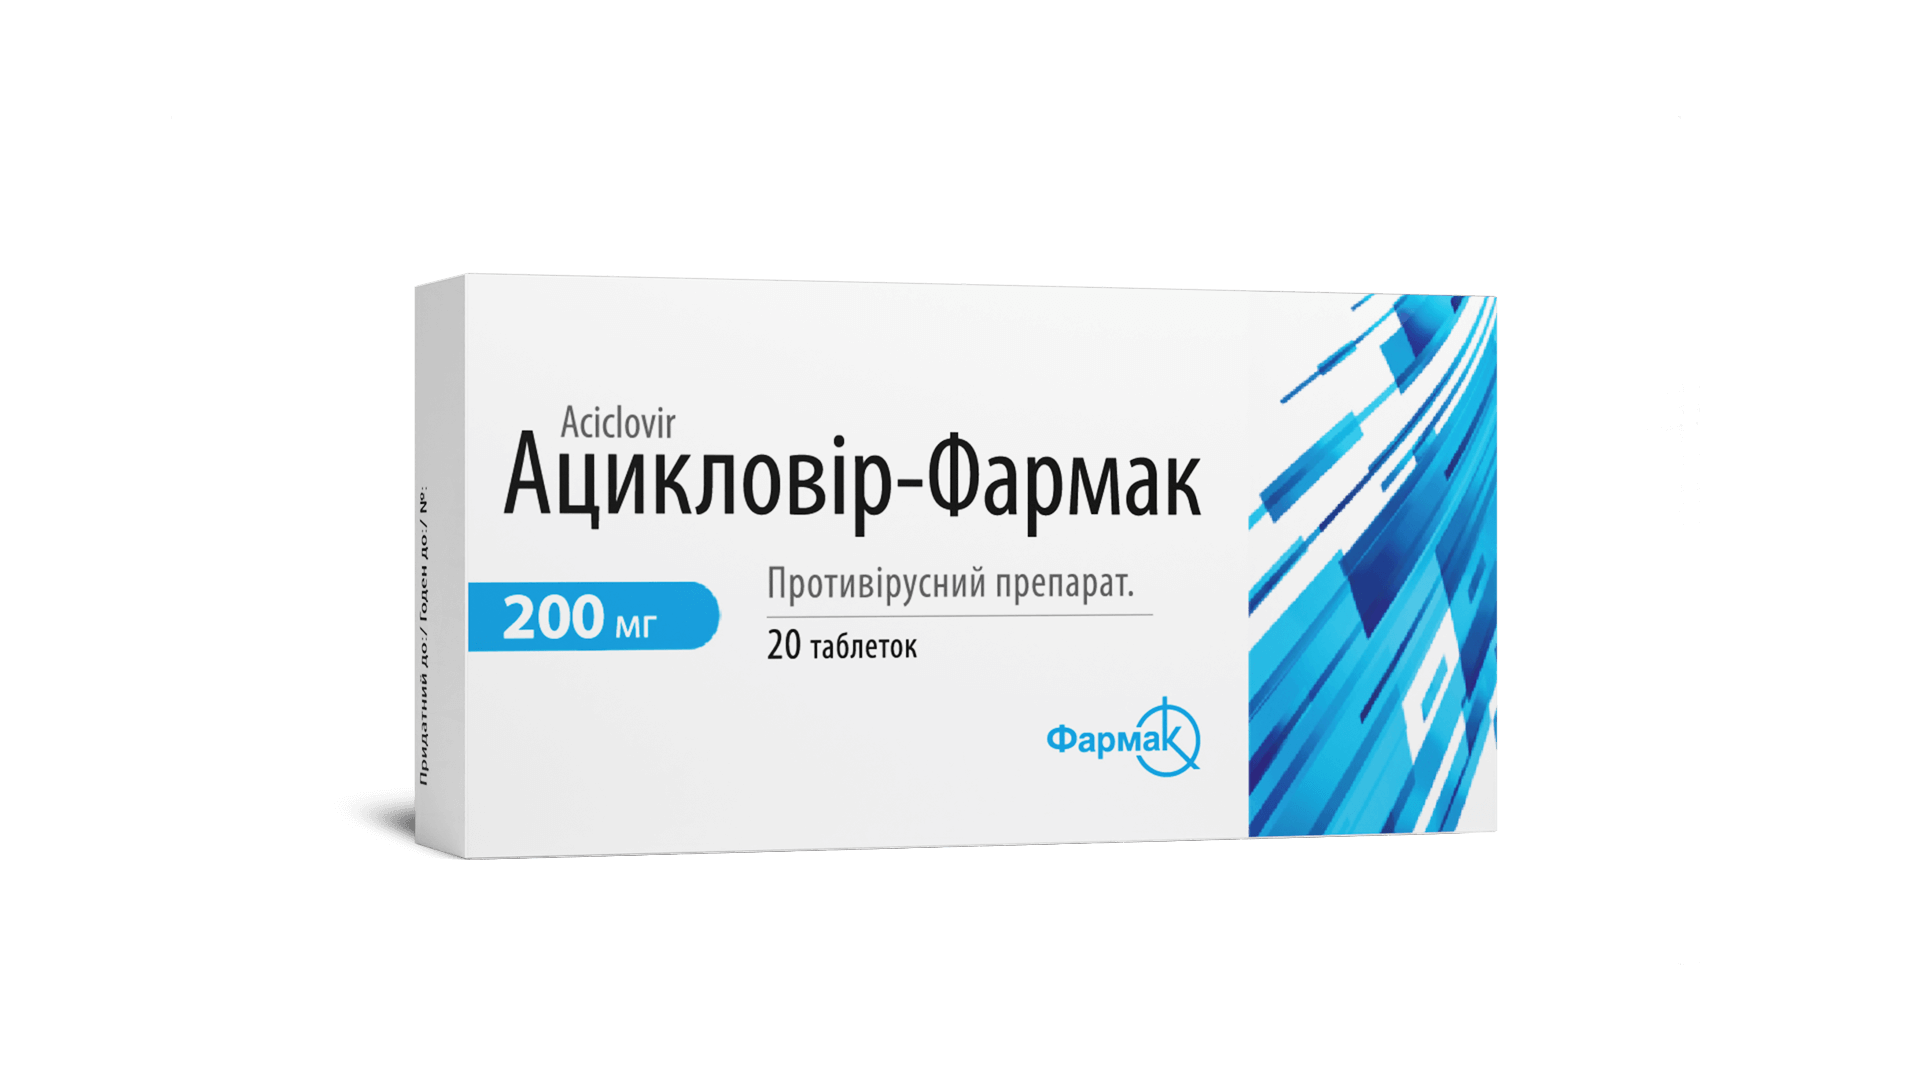 Ацикловир-Фармак (1)